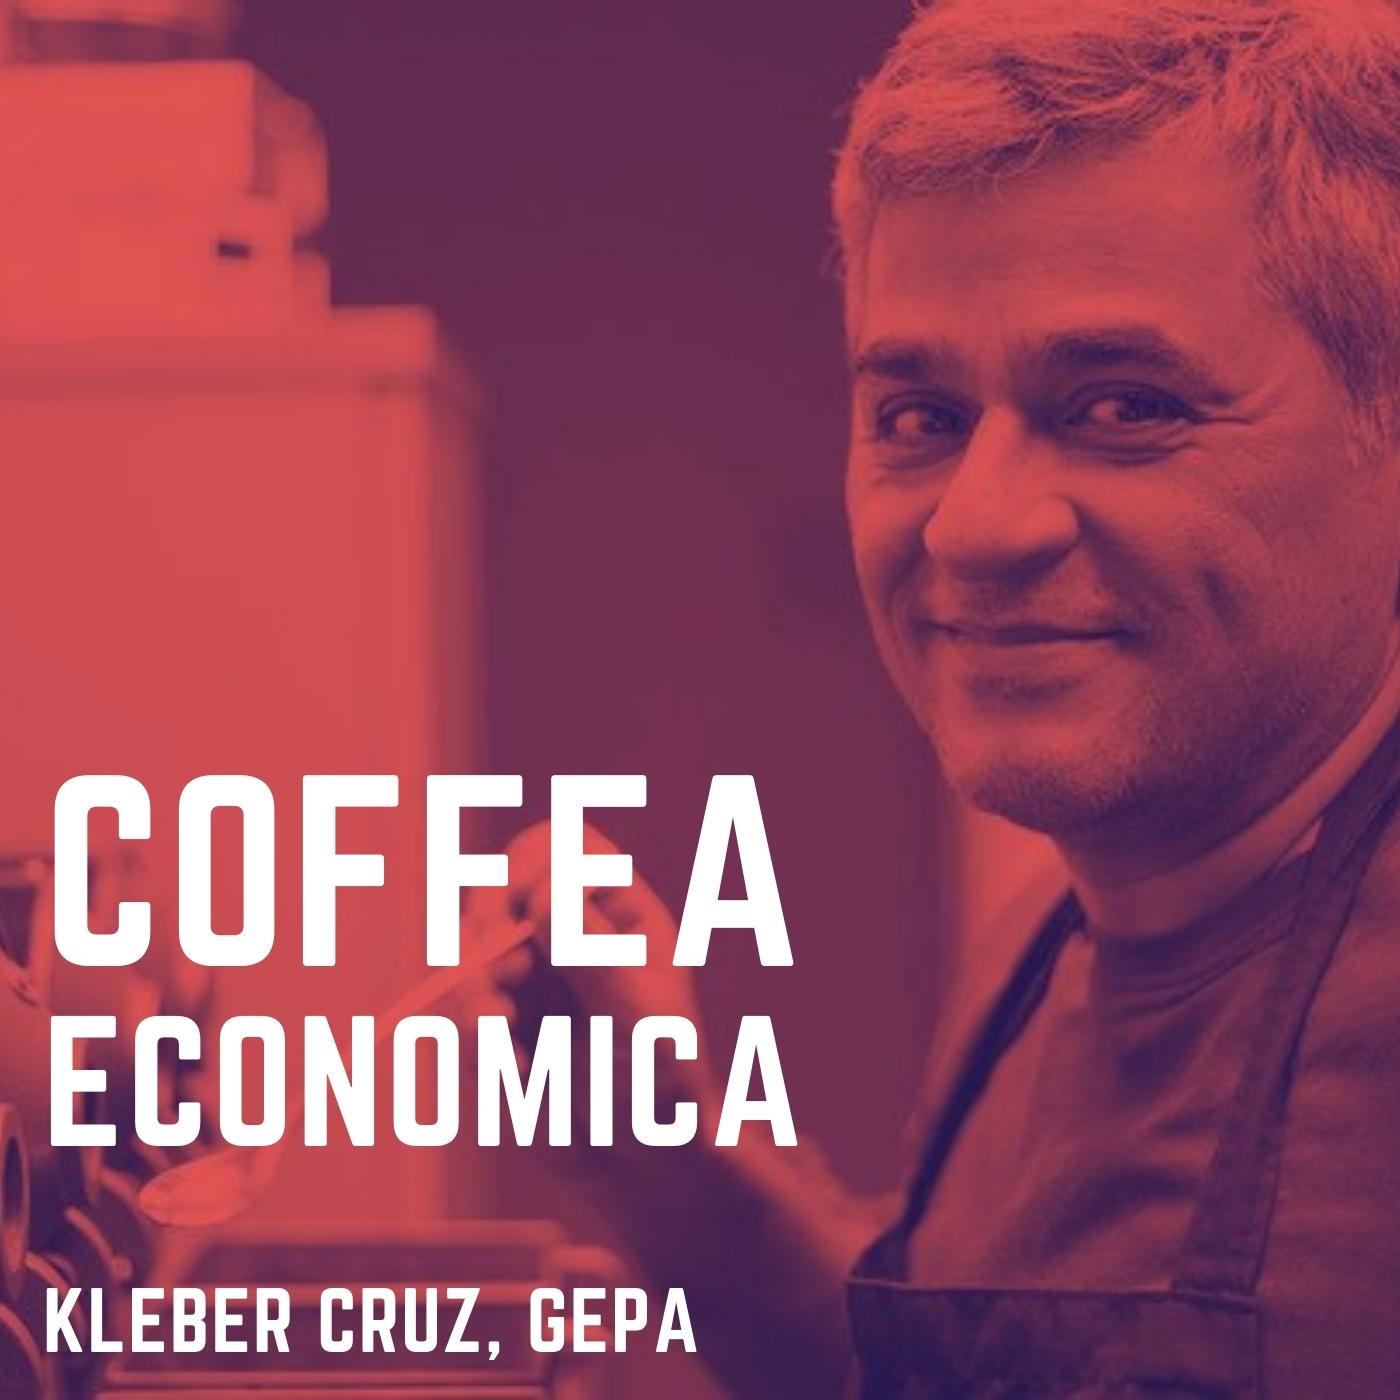 Coffea Economica: Kleber Cruz, GEPA